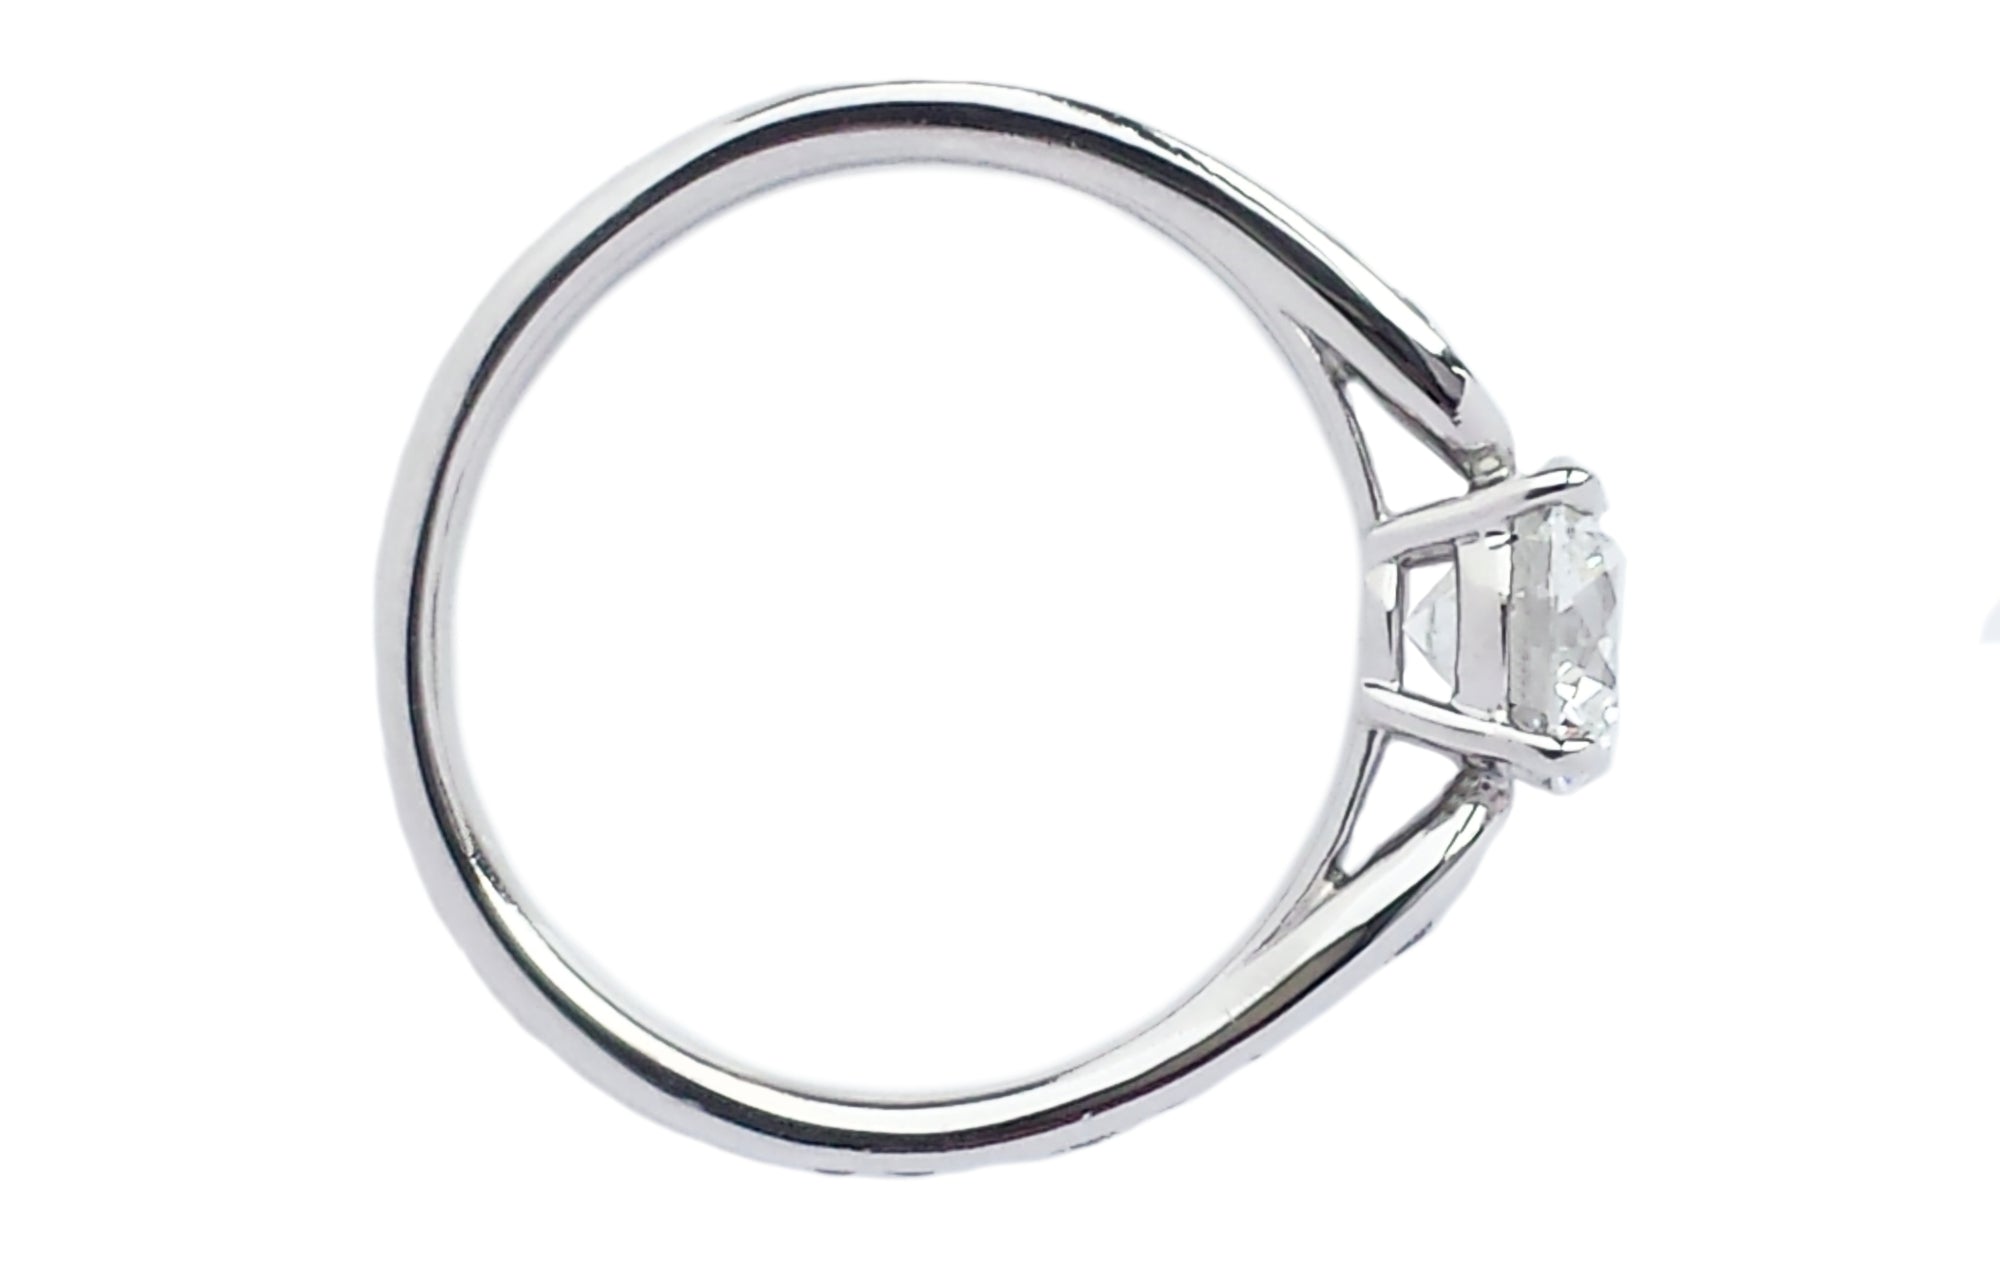 Tiffany & Co. 1.01tcw G/VS1 Triple XXX Harmony Diamond Engagement Ring